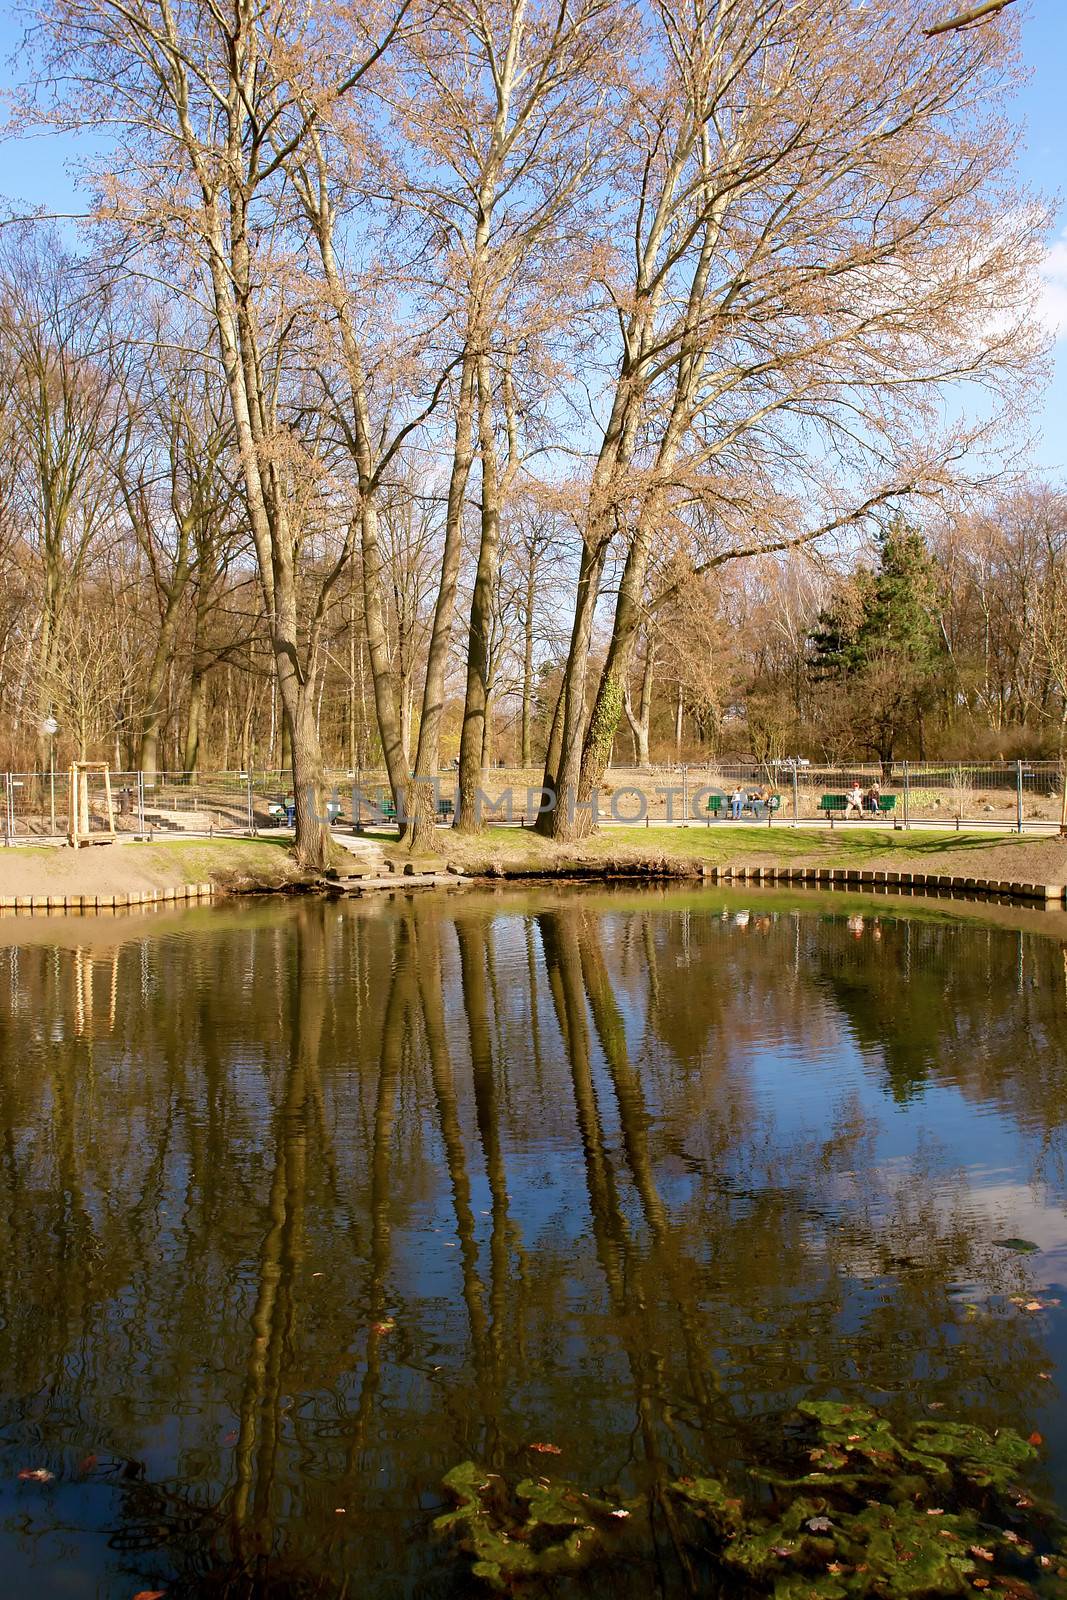 Tiergarten center city park, Berlin, Germany.
